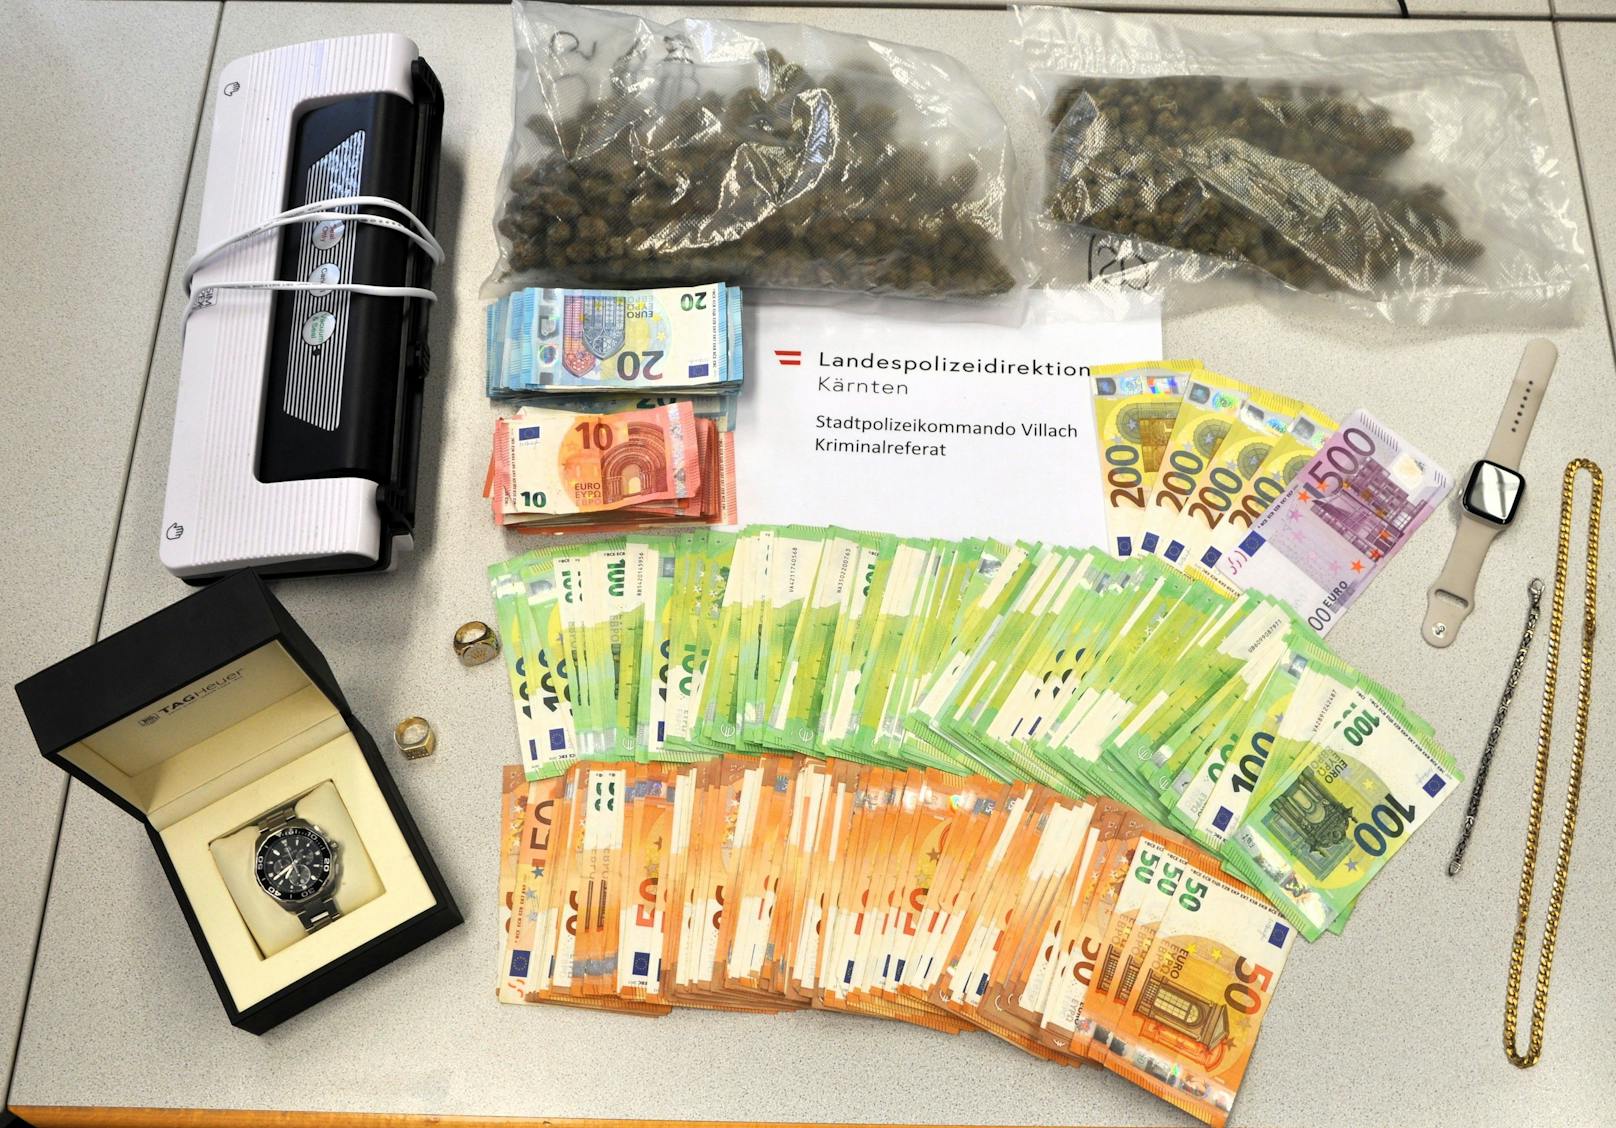 Die Polizei stellte dabei mehrere hundert Gramm Kokain, circa 20 Gramm Heroin, 26 Stück Extasy Tabletten, 14 Gramm MDMA, 161 Gramm Cannabiskraut und geringe Mengen Crystal Meth sicher. Im Zuge dieser intensiven Erhebungen konnte auch noch der Suchtmittellieferant von zumindest drei der Beschuldigten, ein 25-jähriger Mann aus Klagenfurt, ausgeforscht werden. Dieser konnte am 4. Juni am Flughafen Klagenfurt festgenommen und in die Justizanstalt Klagenfurt eingeliefert werden.<em></em>